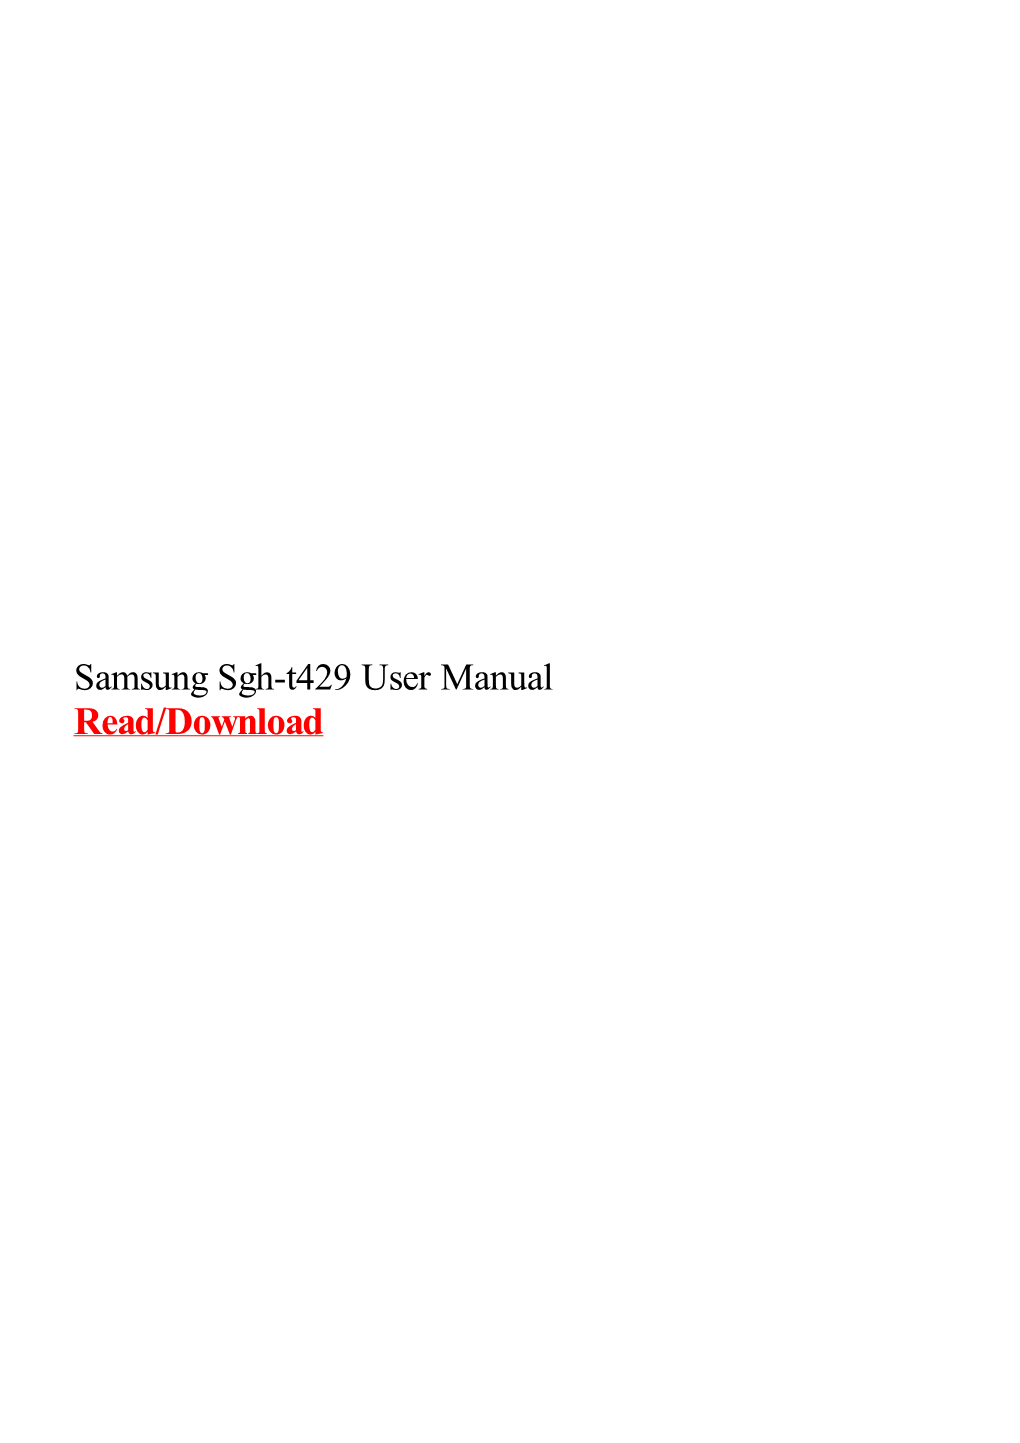 Samsung Sgh-T429 User Manual